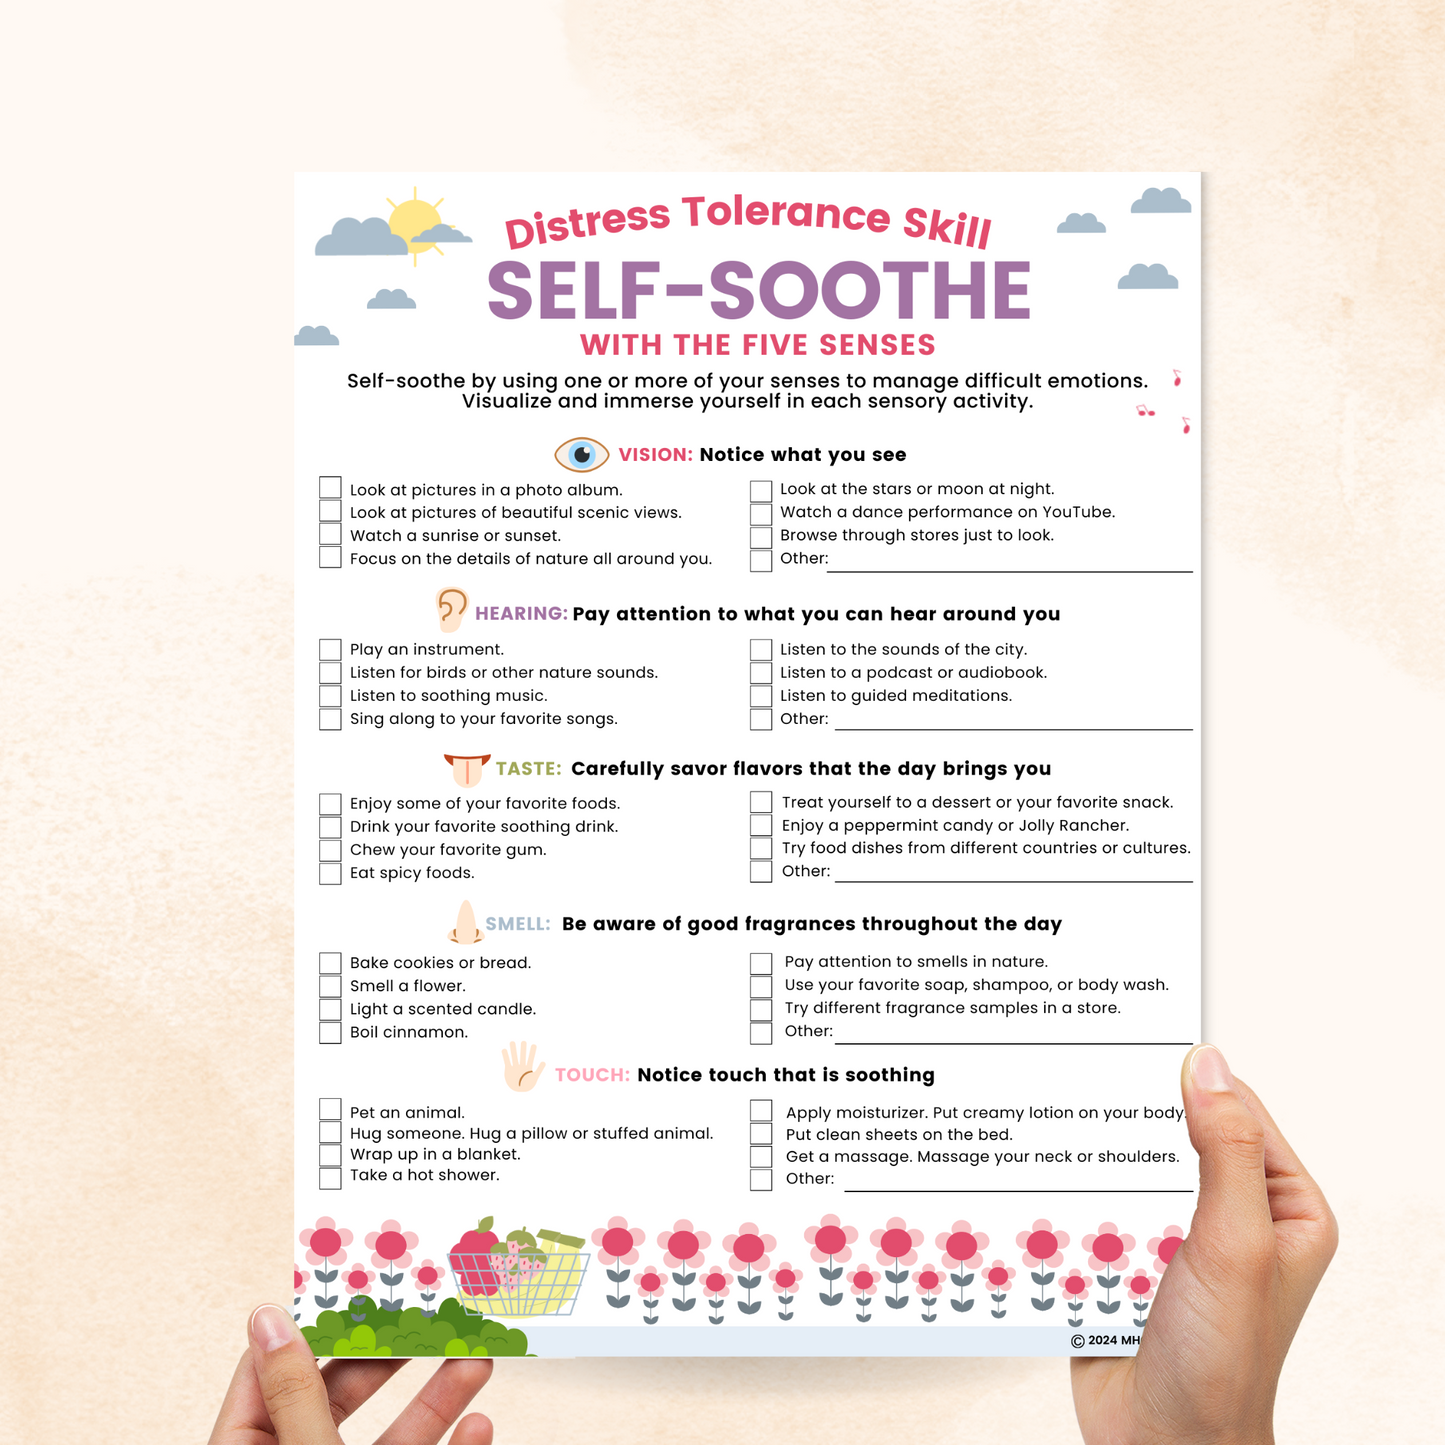 dbt self soothing worksheet 5 senses